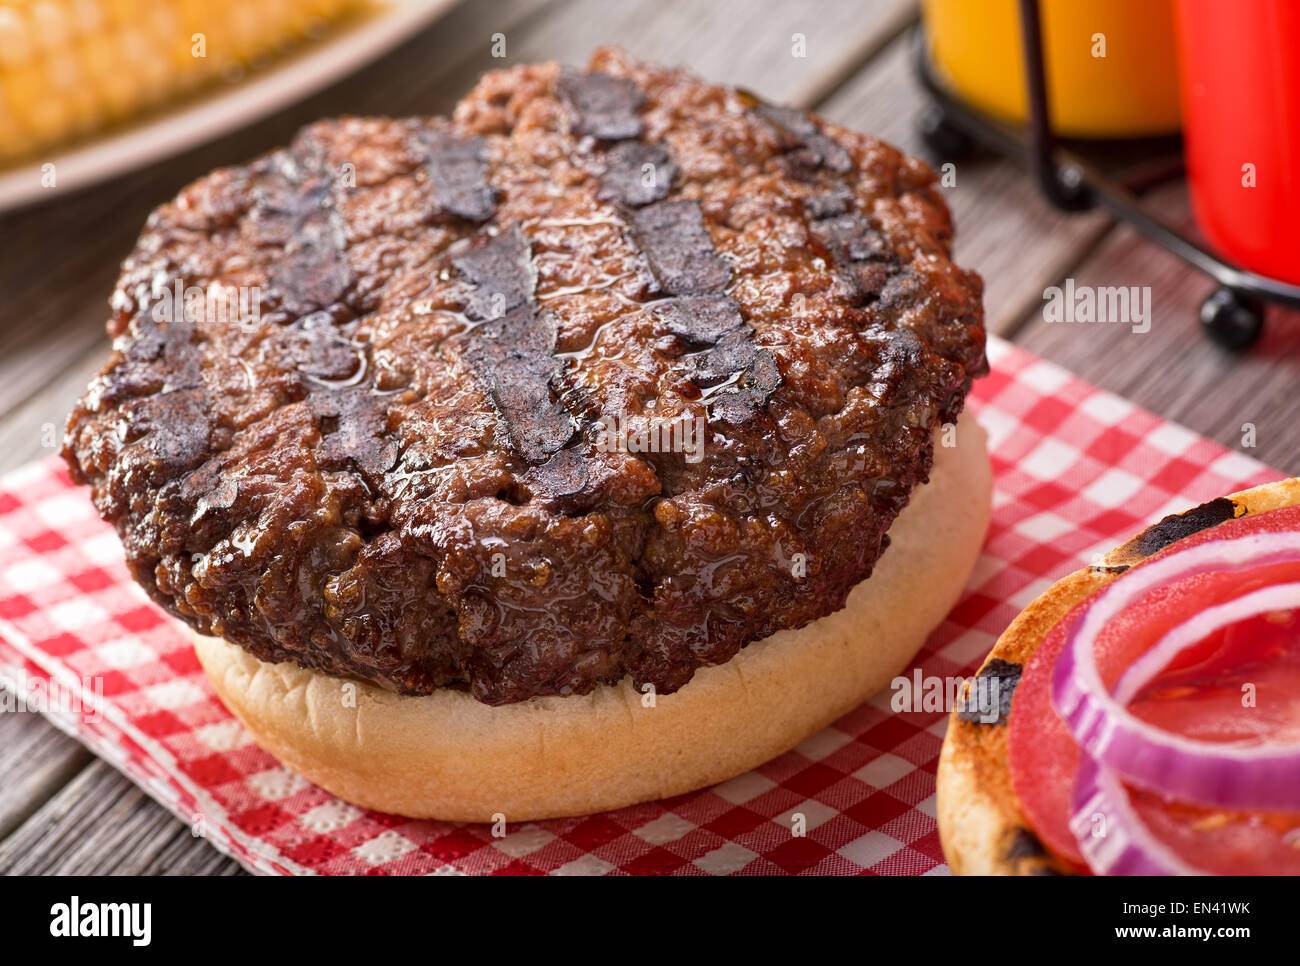 Una jugosa hamburguesa a la brasa con grill marcas en una rústica mesa de picnic con tomate, cebolla, mostaza, ketchup, y el maíz. Foto de stock